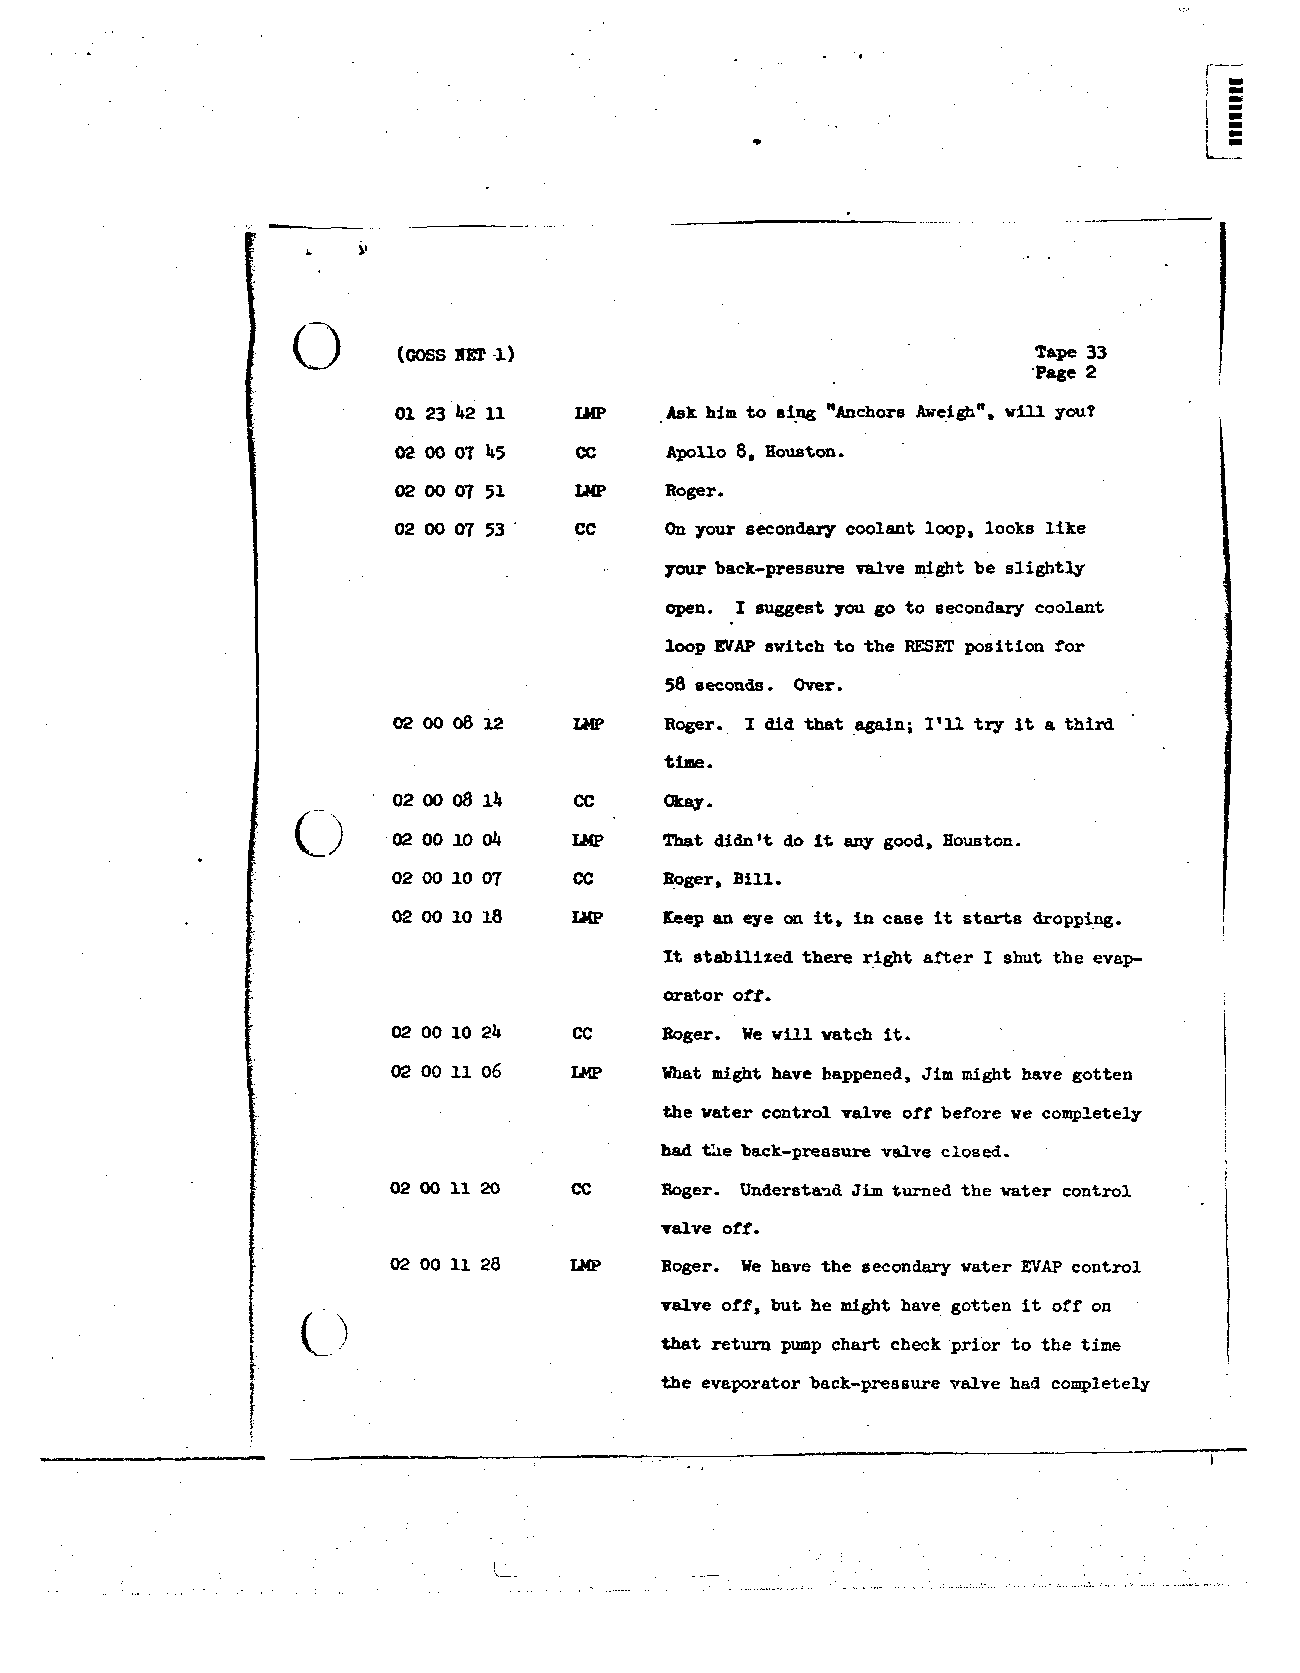 Page 255 of Apollo 8’s original transcript